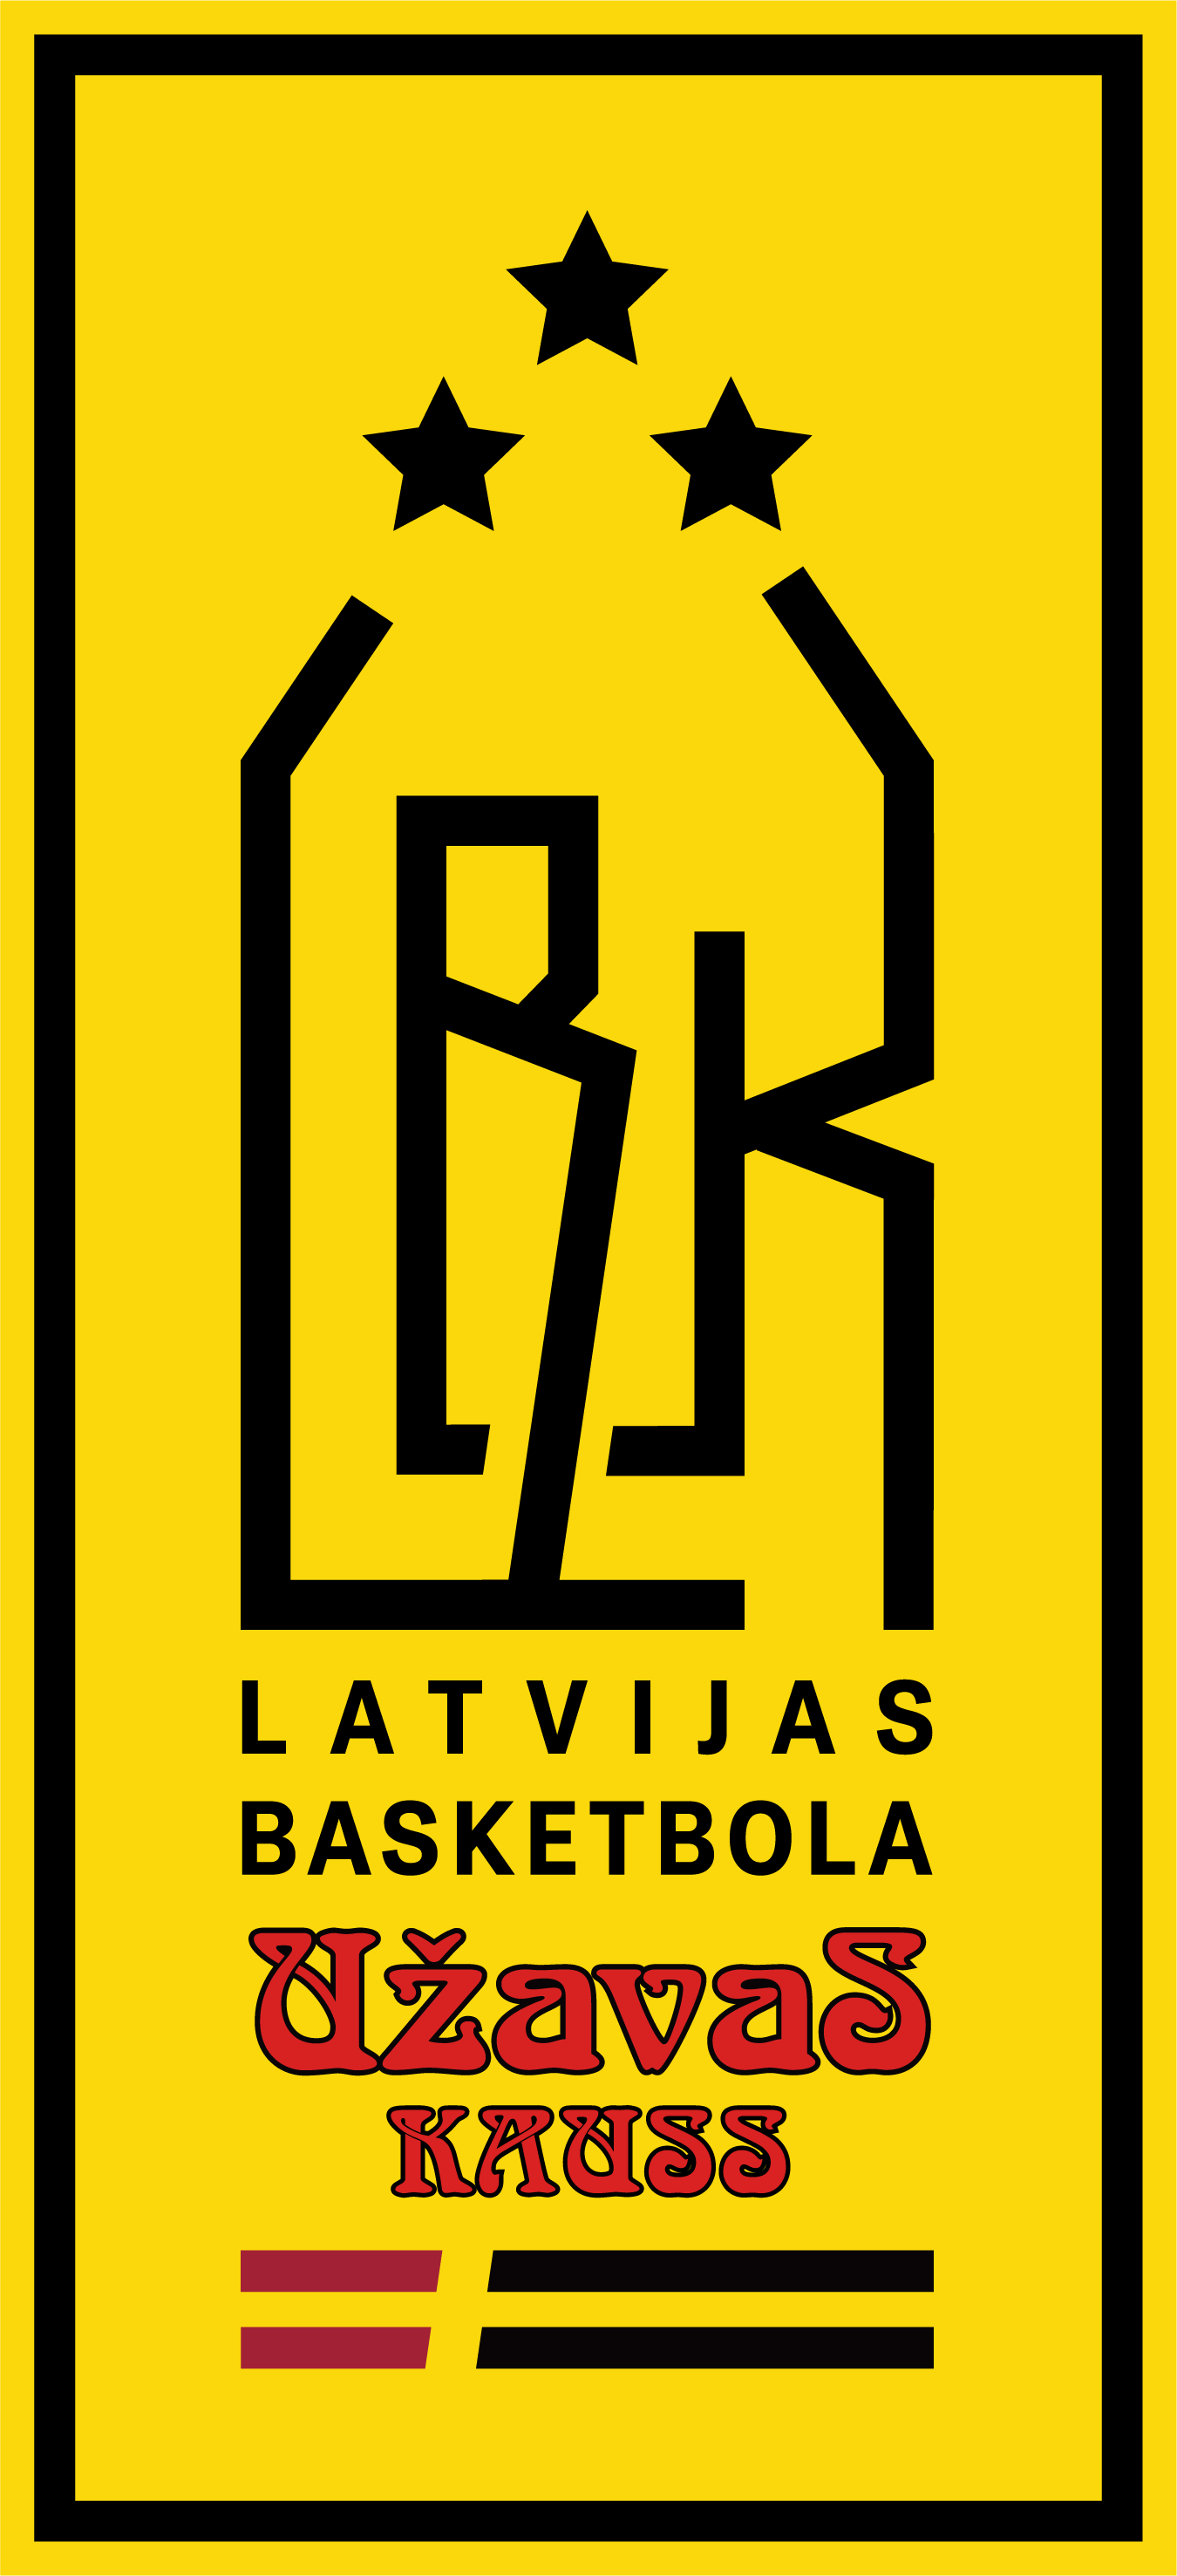 Latvijas basketbola Užavas kausam pieteikusies 21 komanda